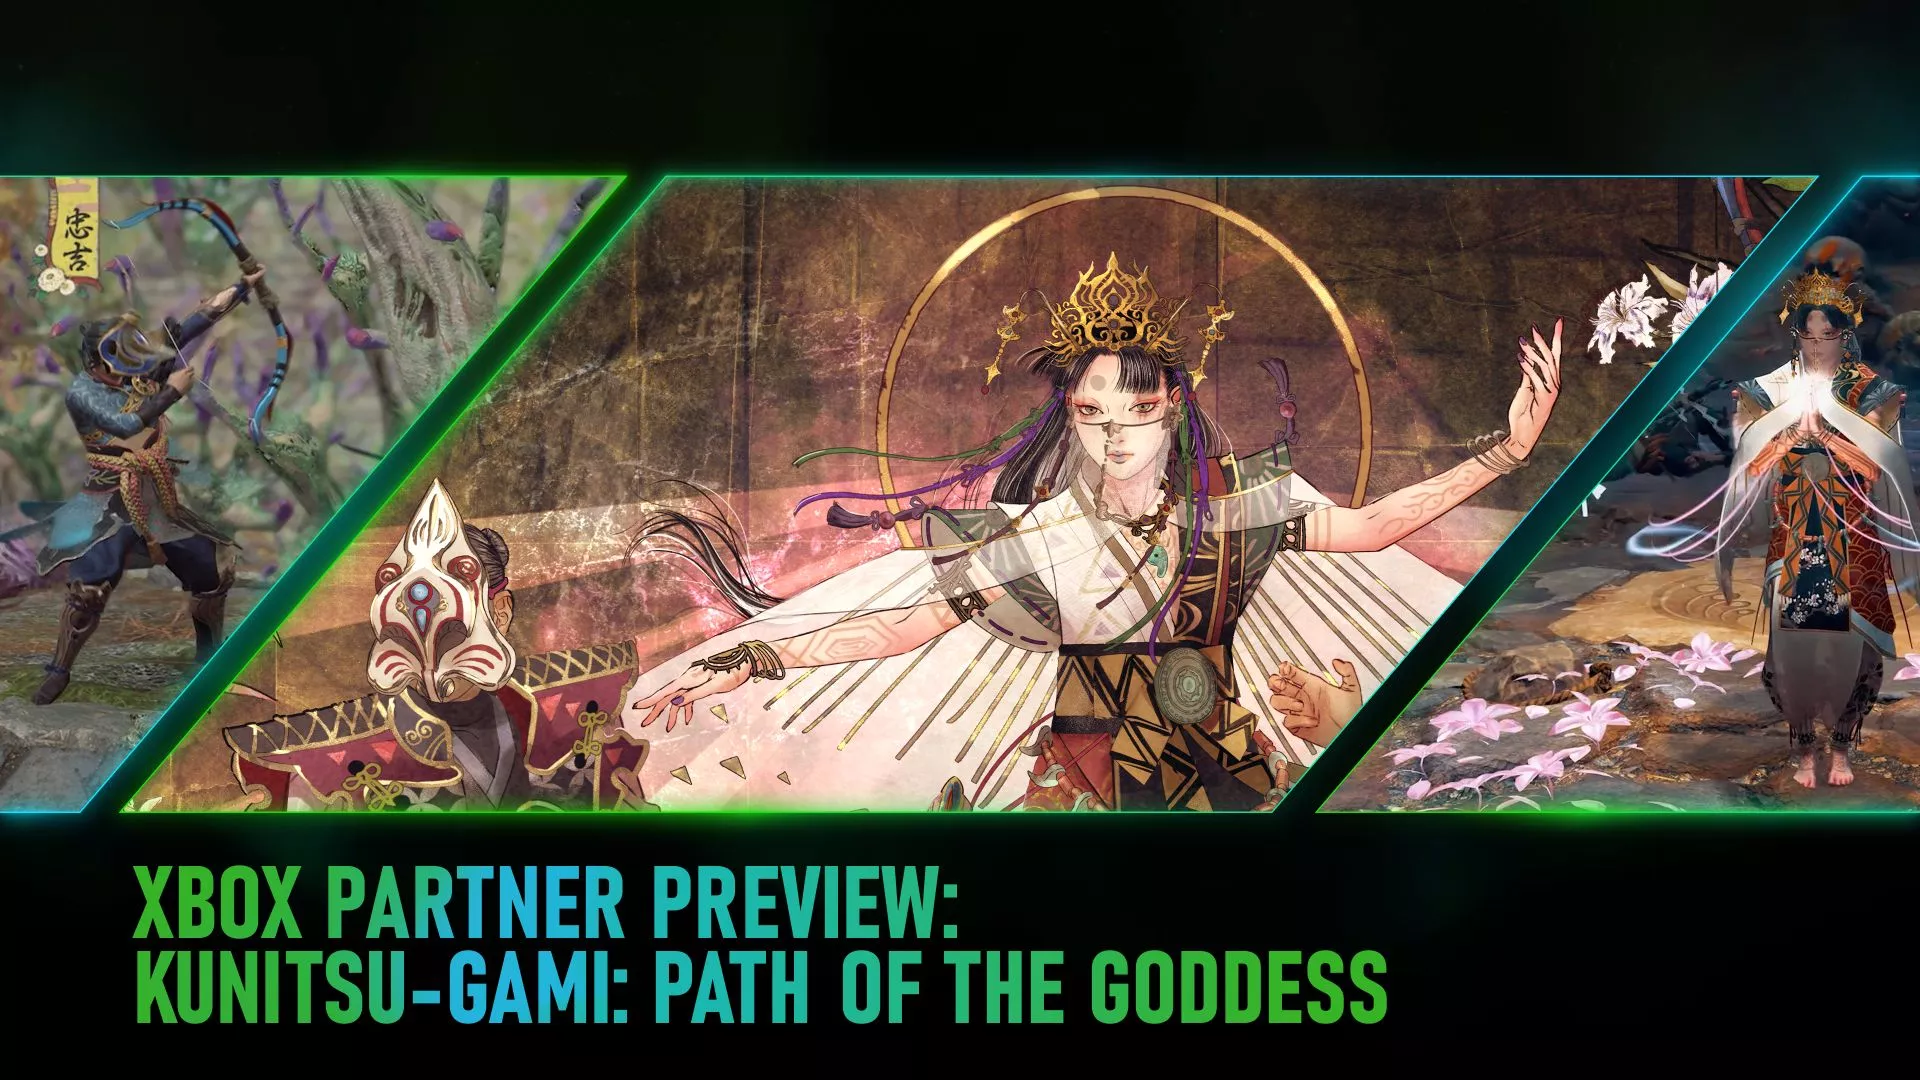 Nähere Informationen zu Kunitsu-Gami: Path of the Goddess geteilt Heropic